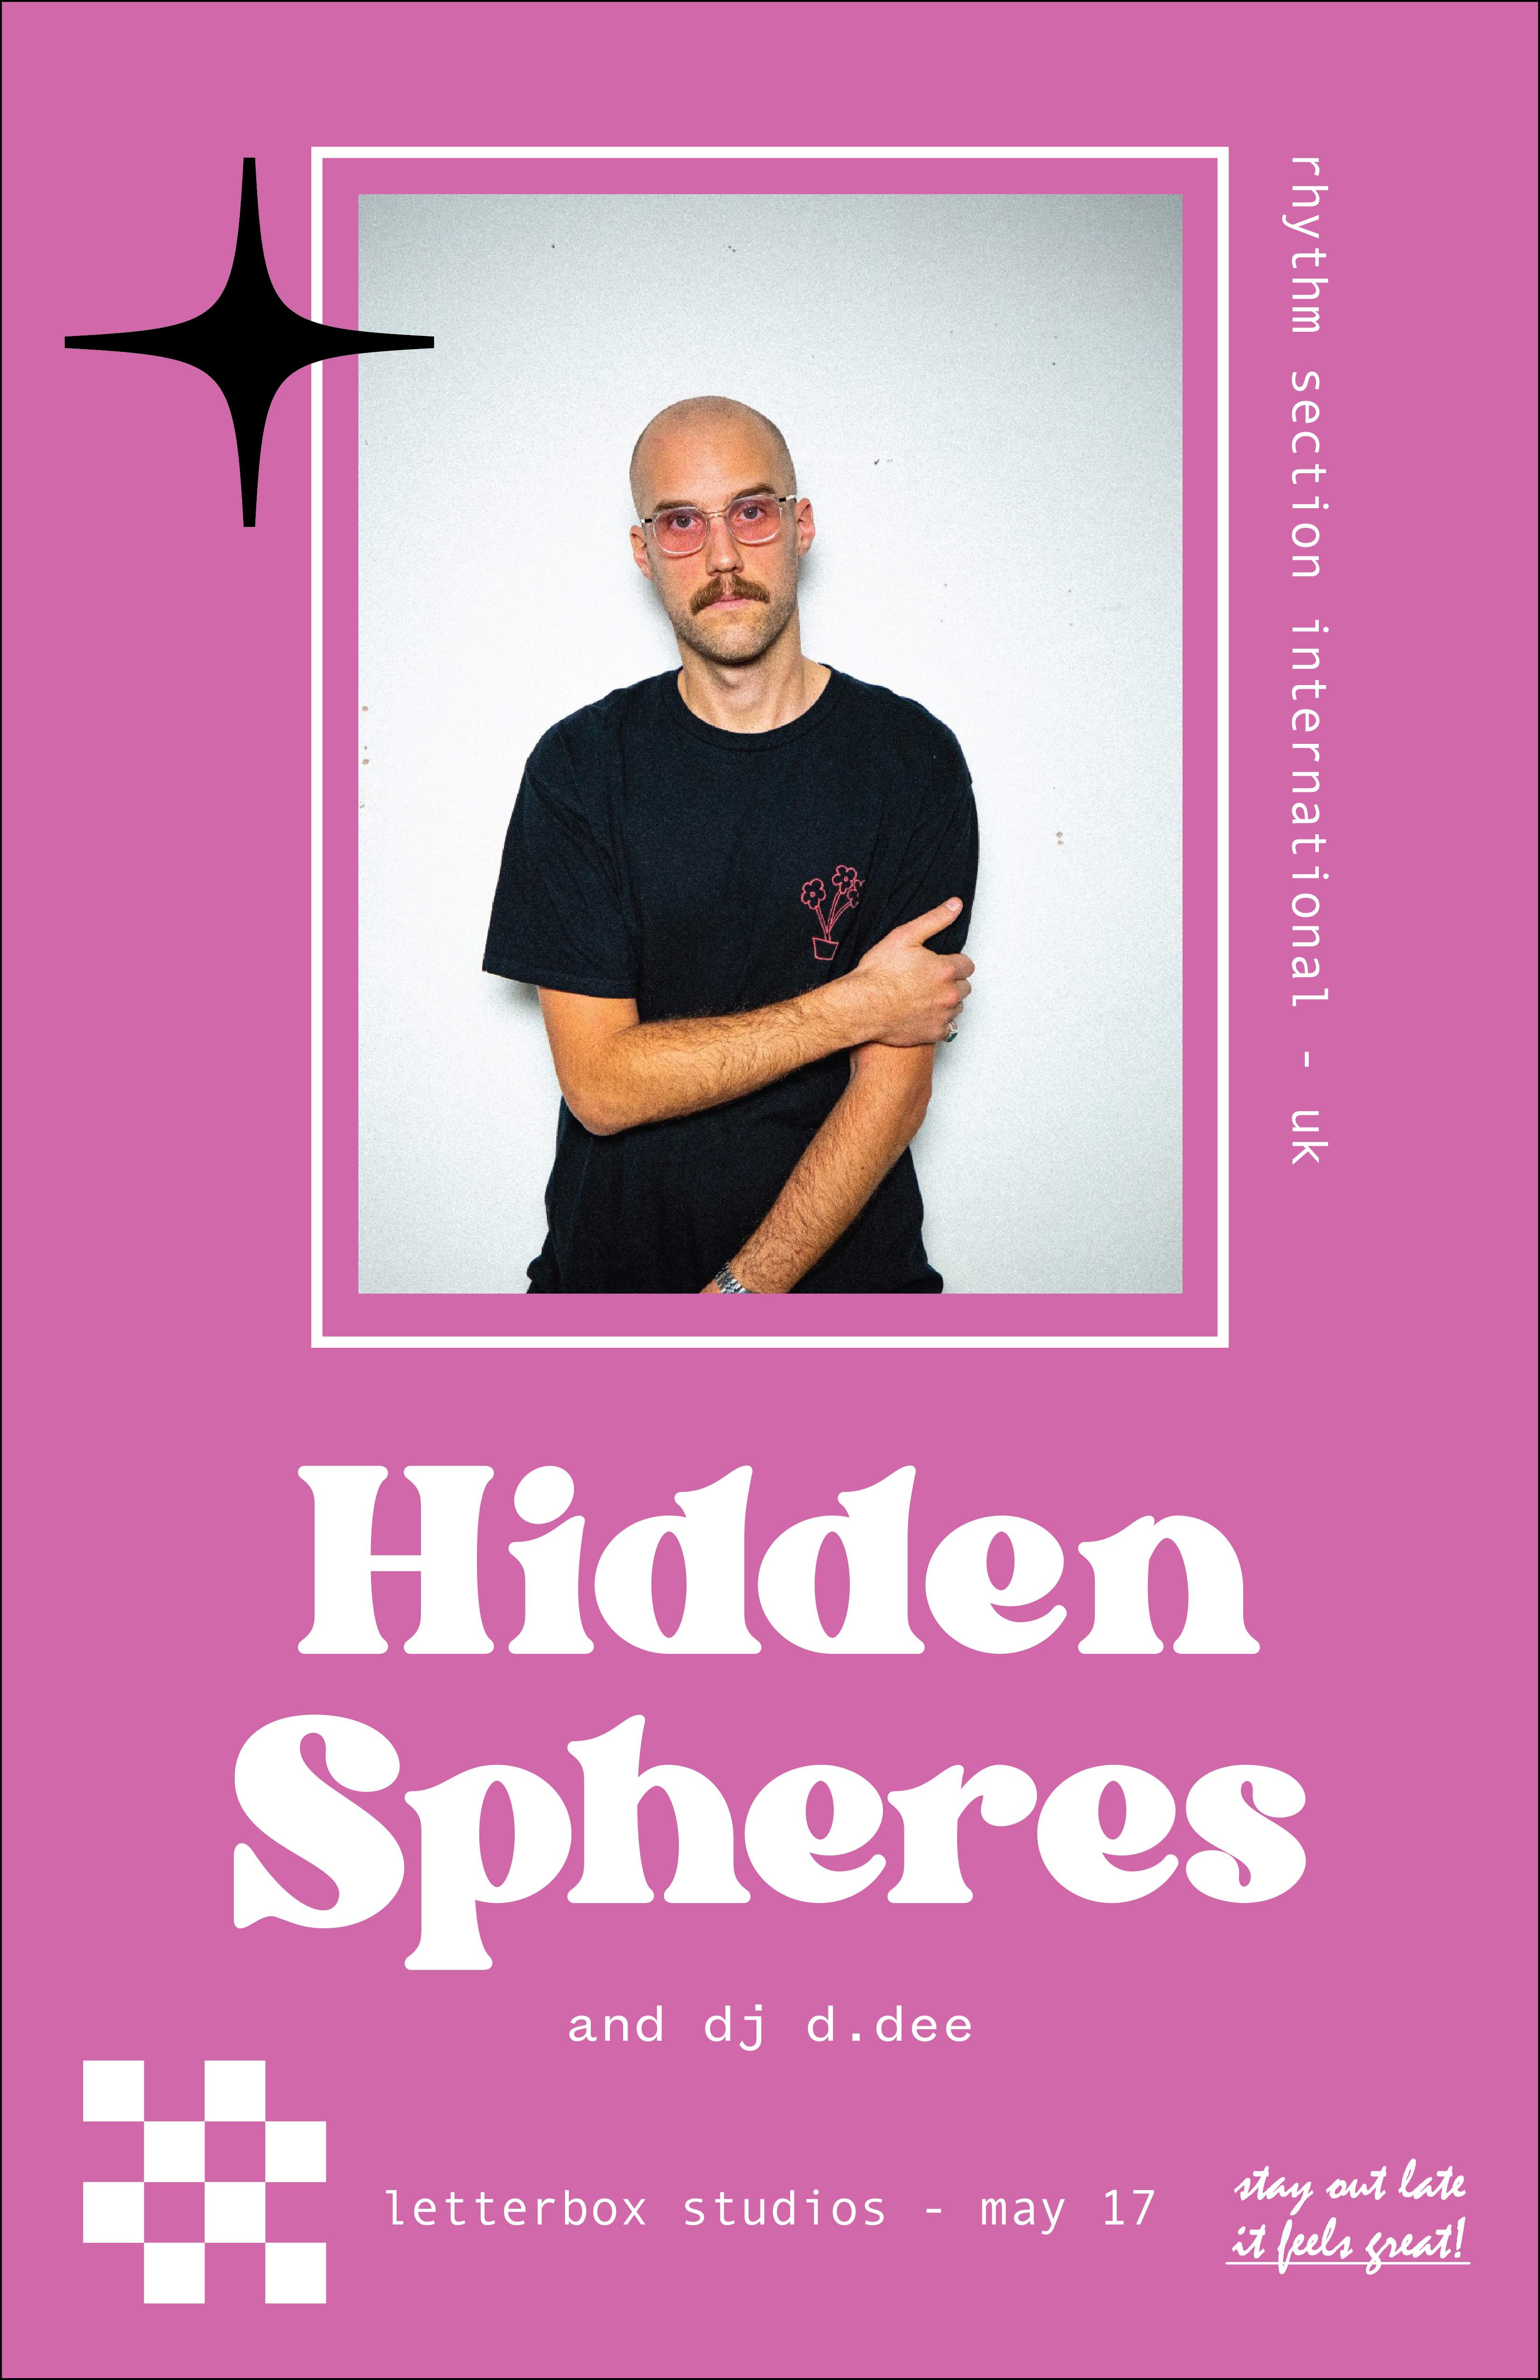 Hiddens Spheres and DJ D.DEE - フライヤー表